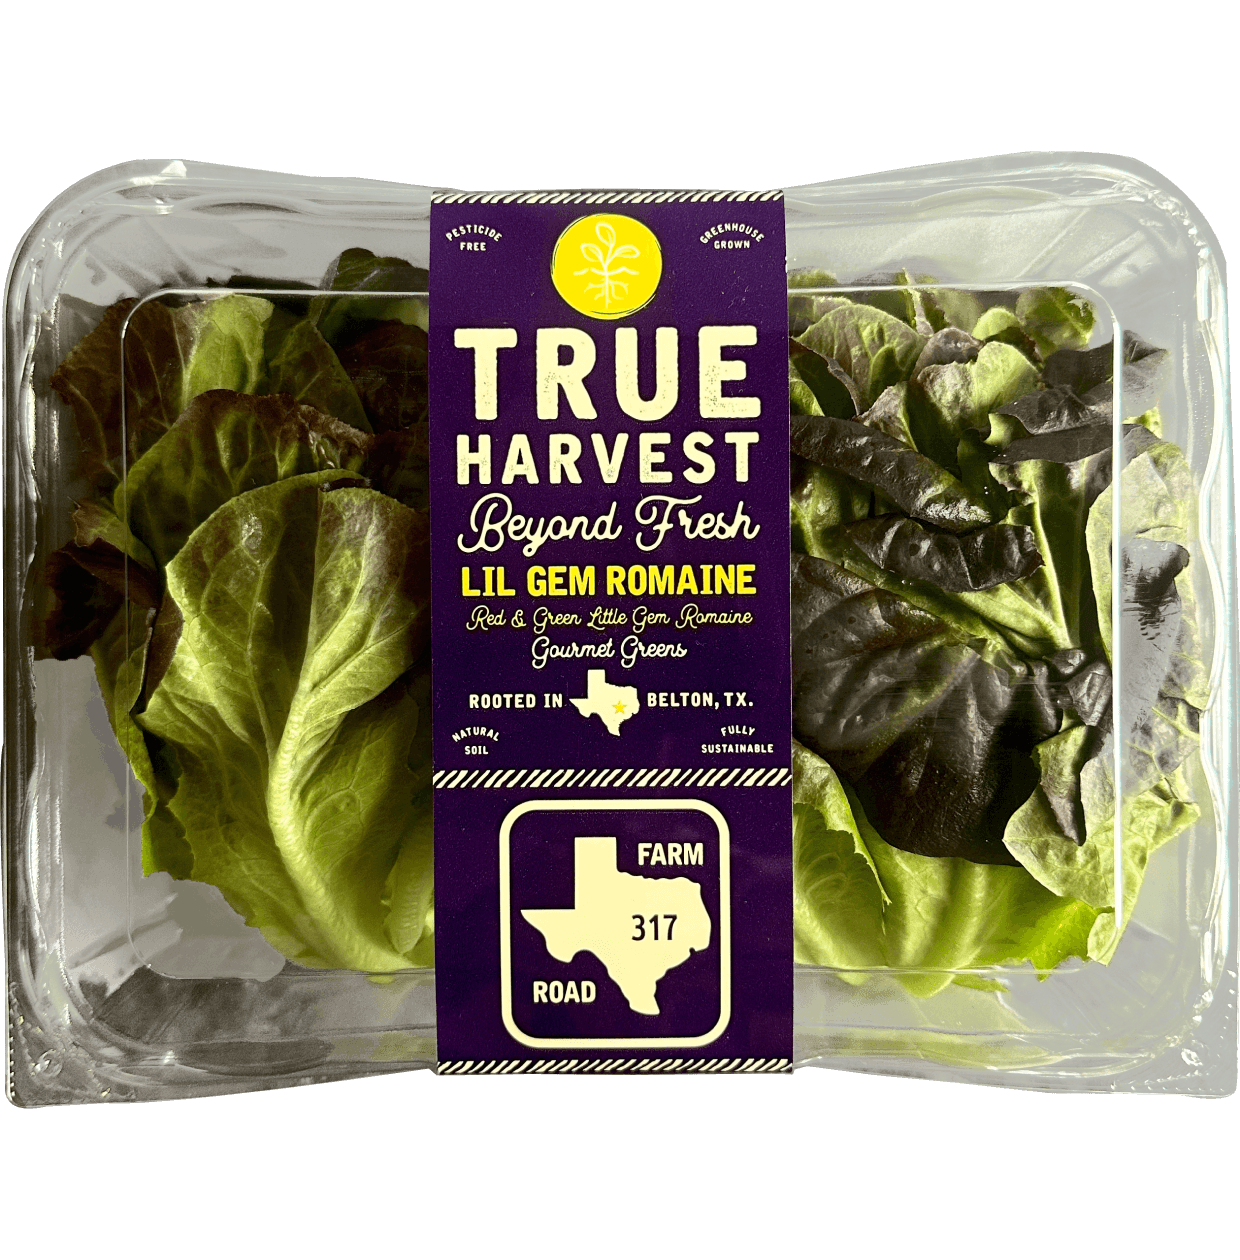 TrueHarvest Lil Gem Romaine lettuce clamshell